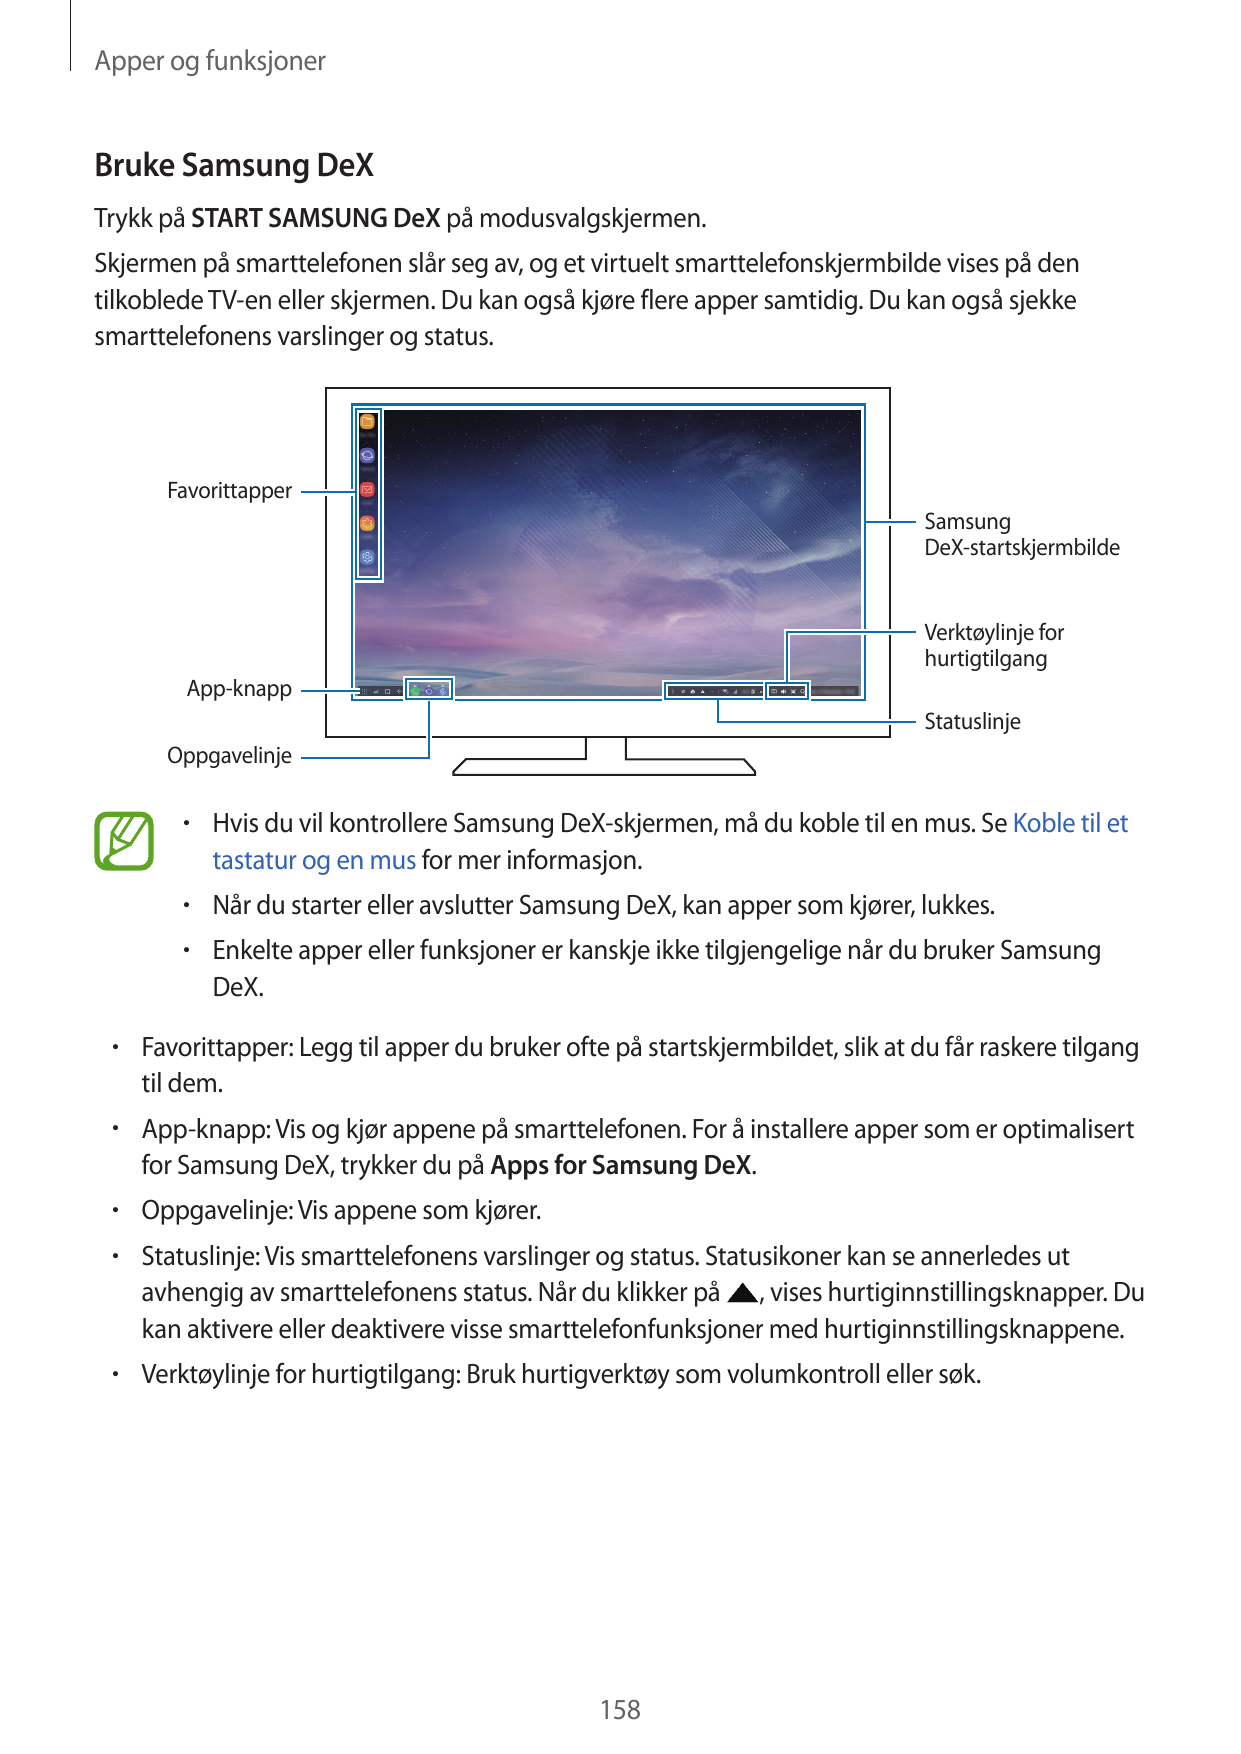 Apper og funksjonerBruke Samsung DeXTrykk på START SAMSUNG DeX på modusvalgskjermen.Skjermen på smarttelefonen slår seg av, og e